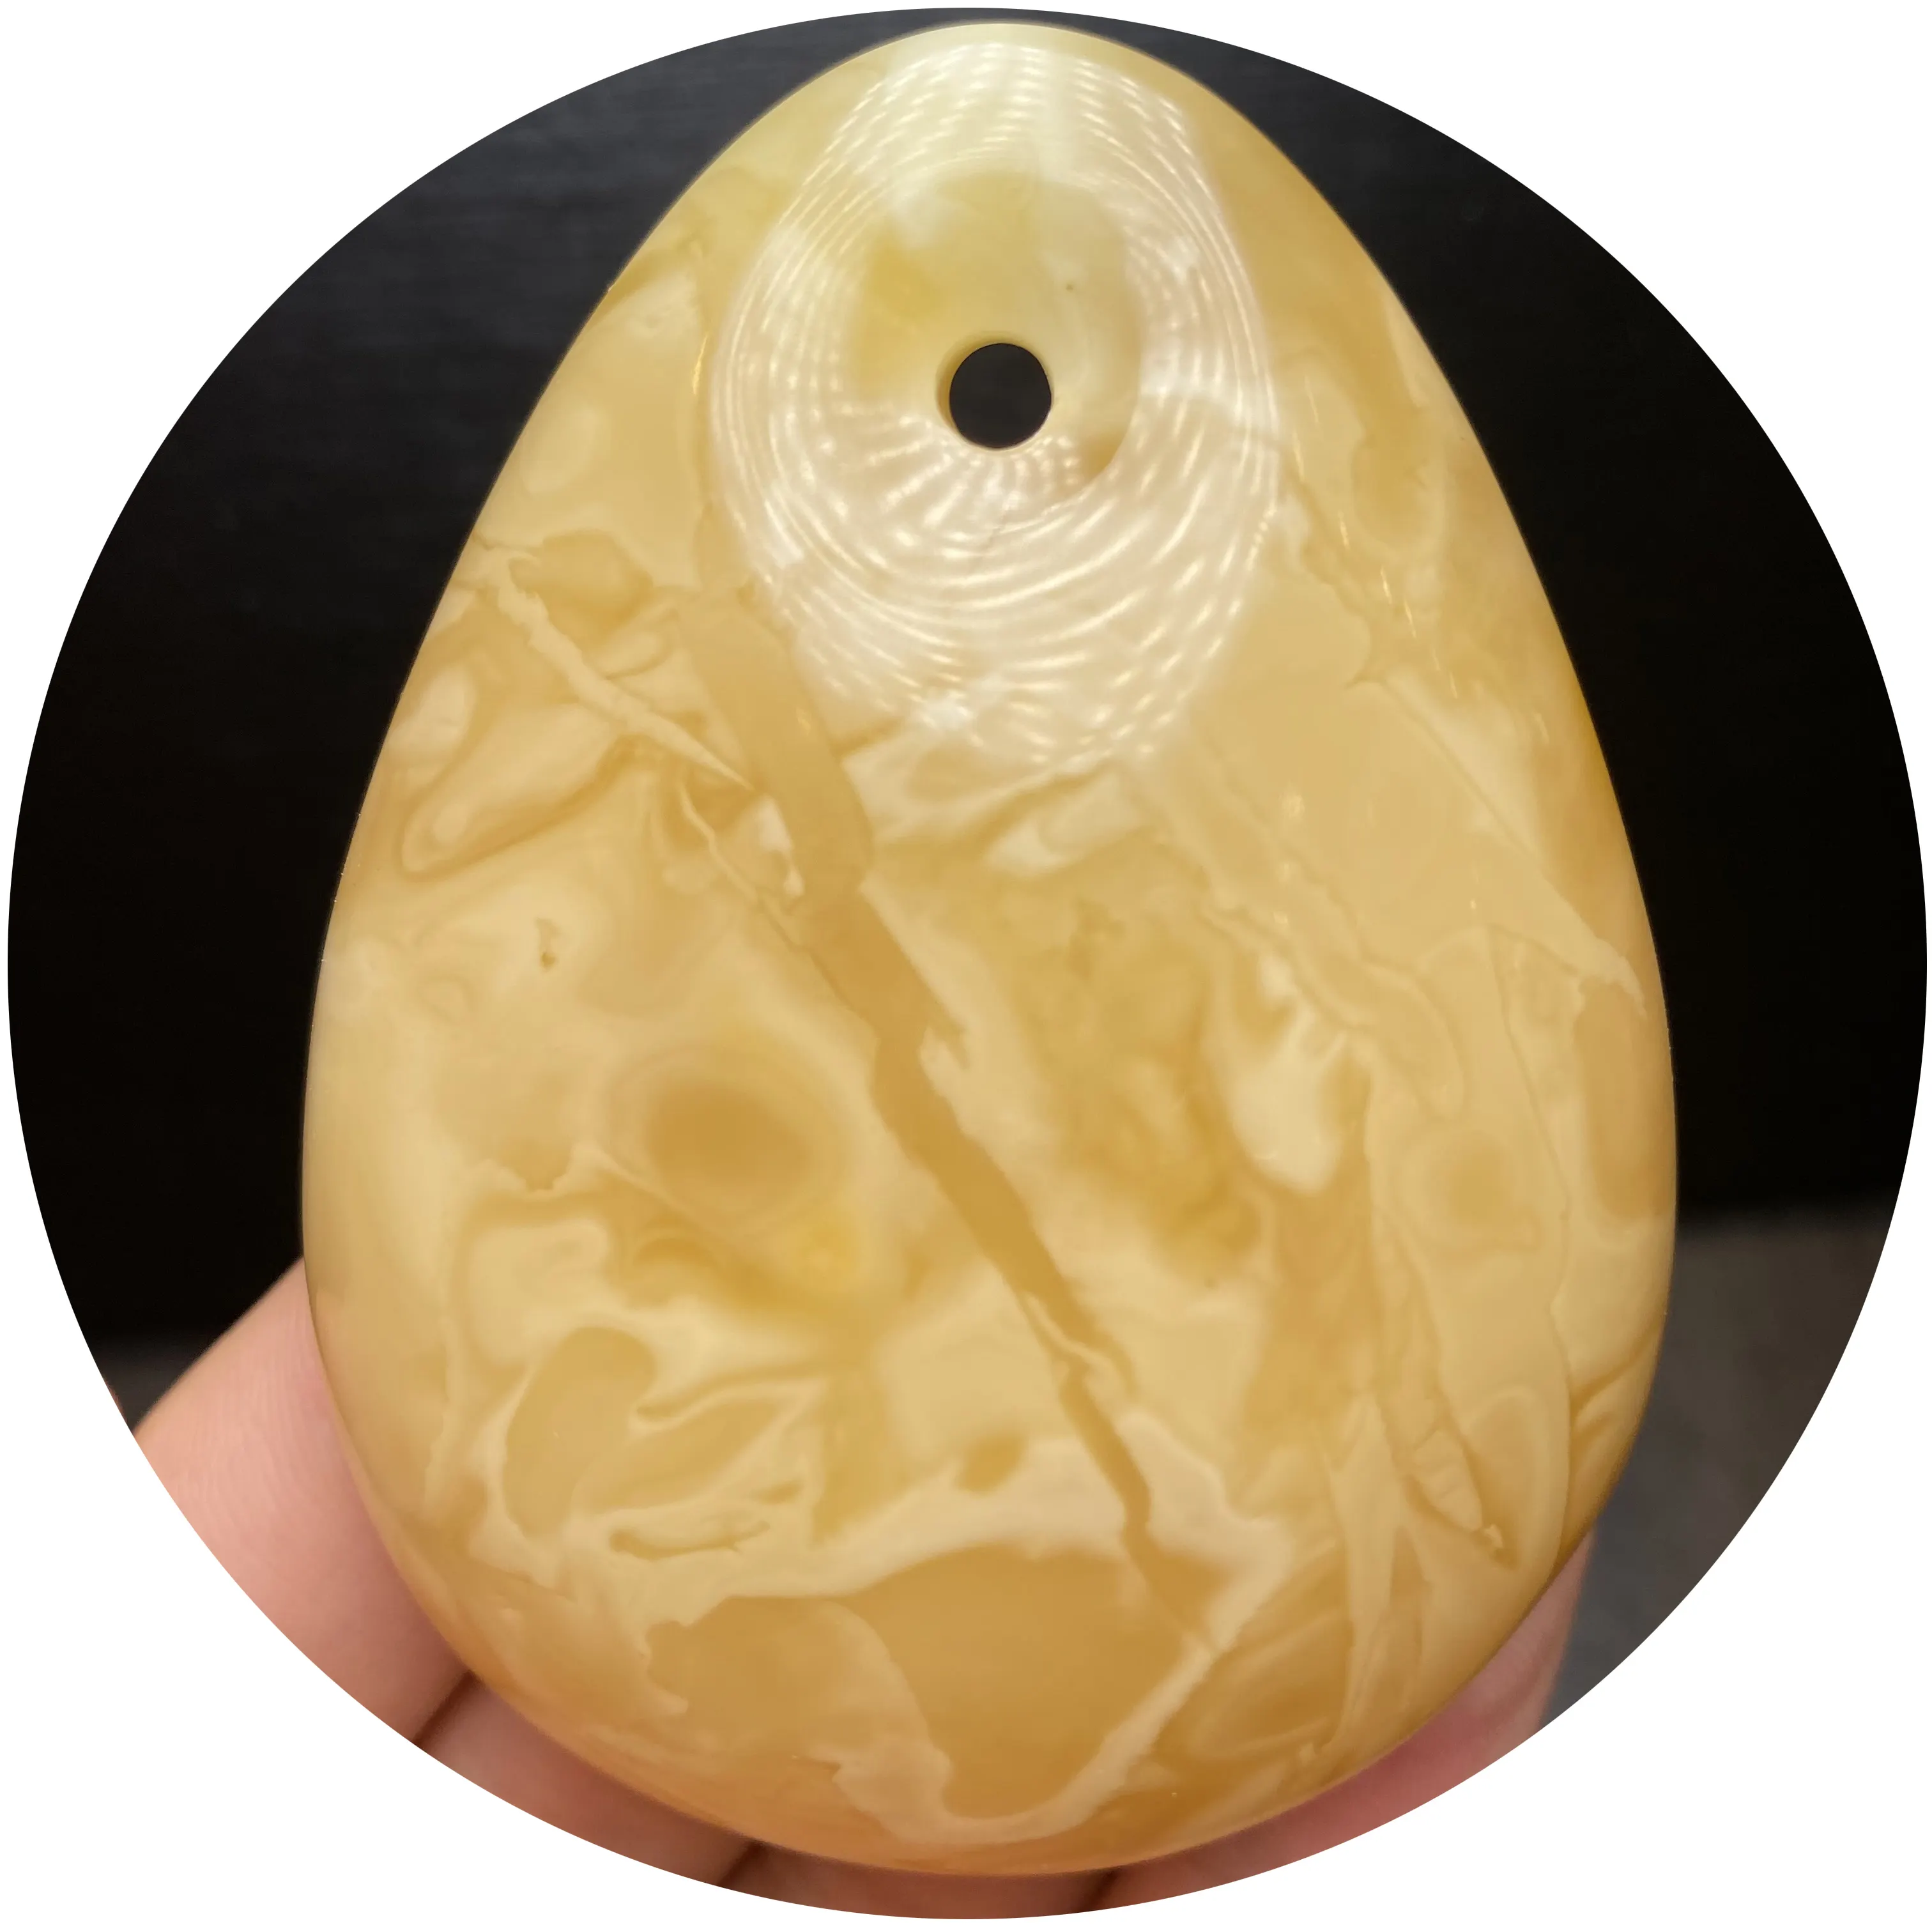 Presa di fabbrica ambra russa naturale 42g forma a goccia giallo ambra opaca bel colore nessuna qualità di crepe